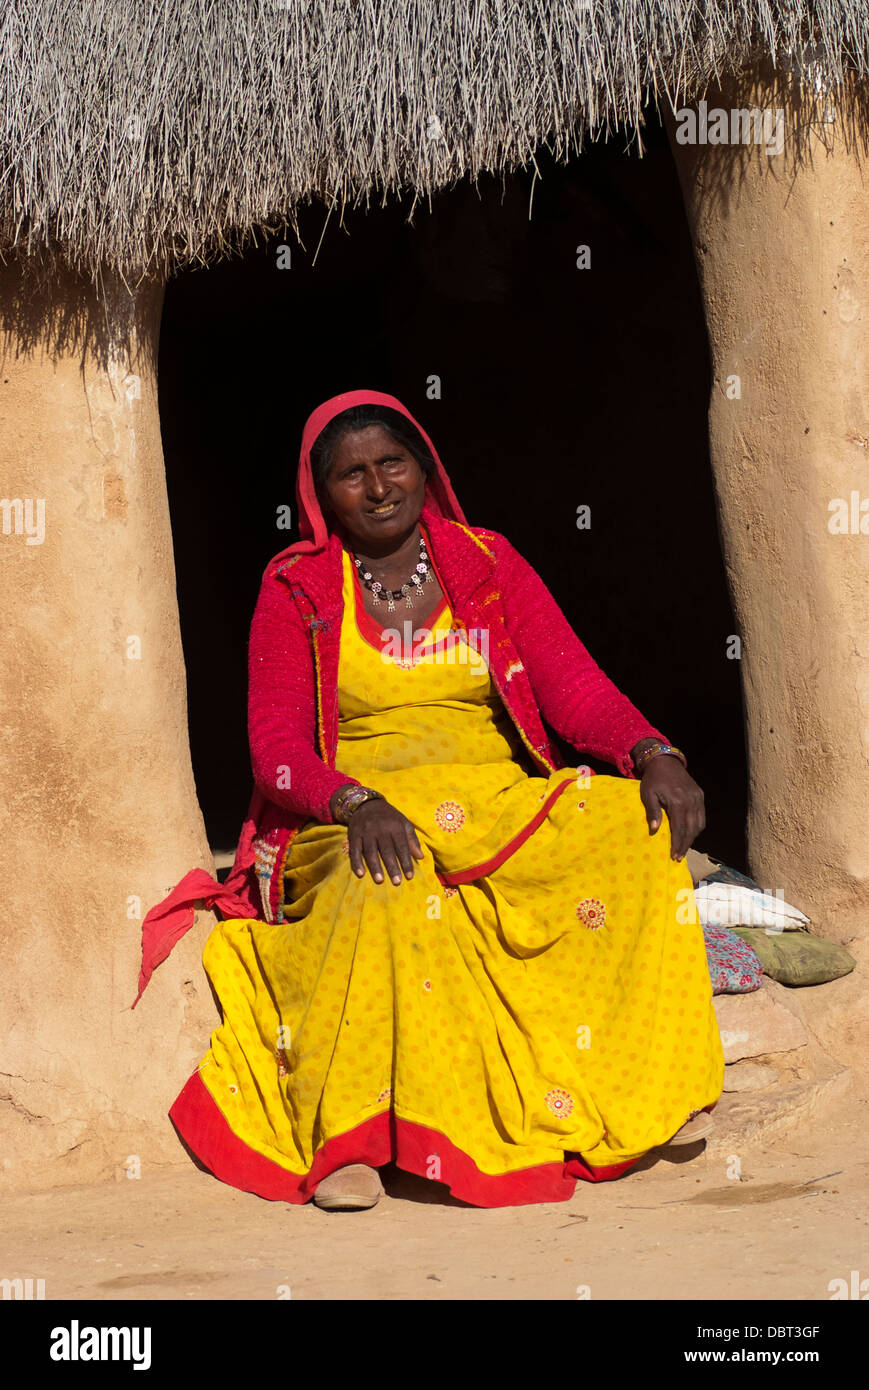 Une femme en sari jaune vif assis devant sa hutte de terre le 27 février 2013 à Jaisalmer, Inde. Banque D'Images